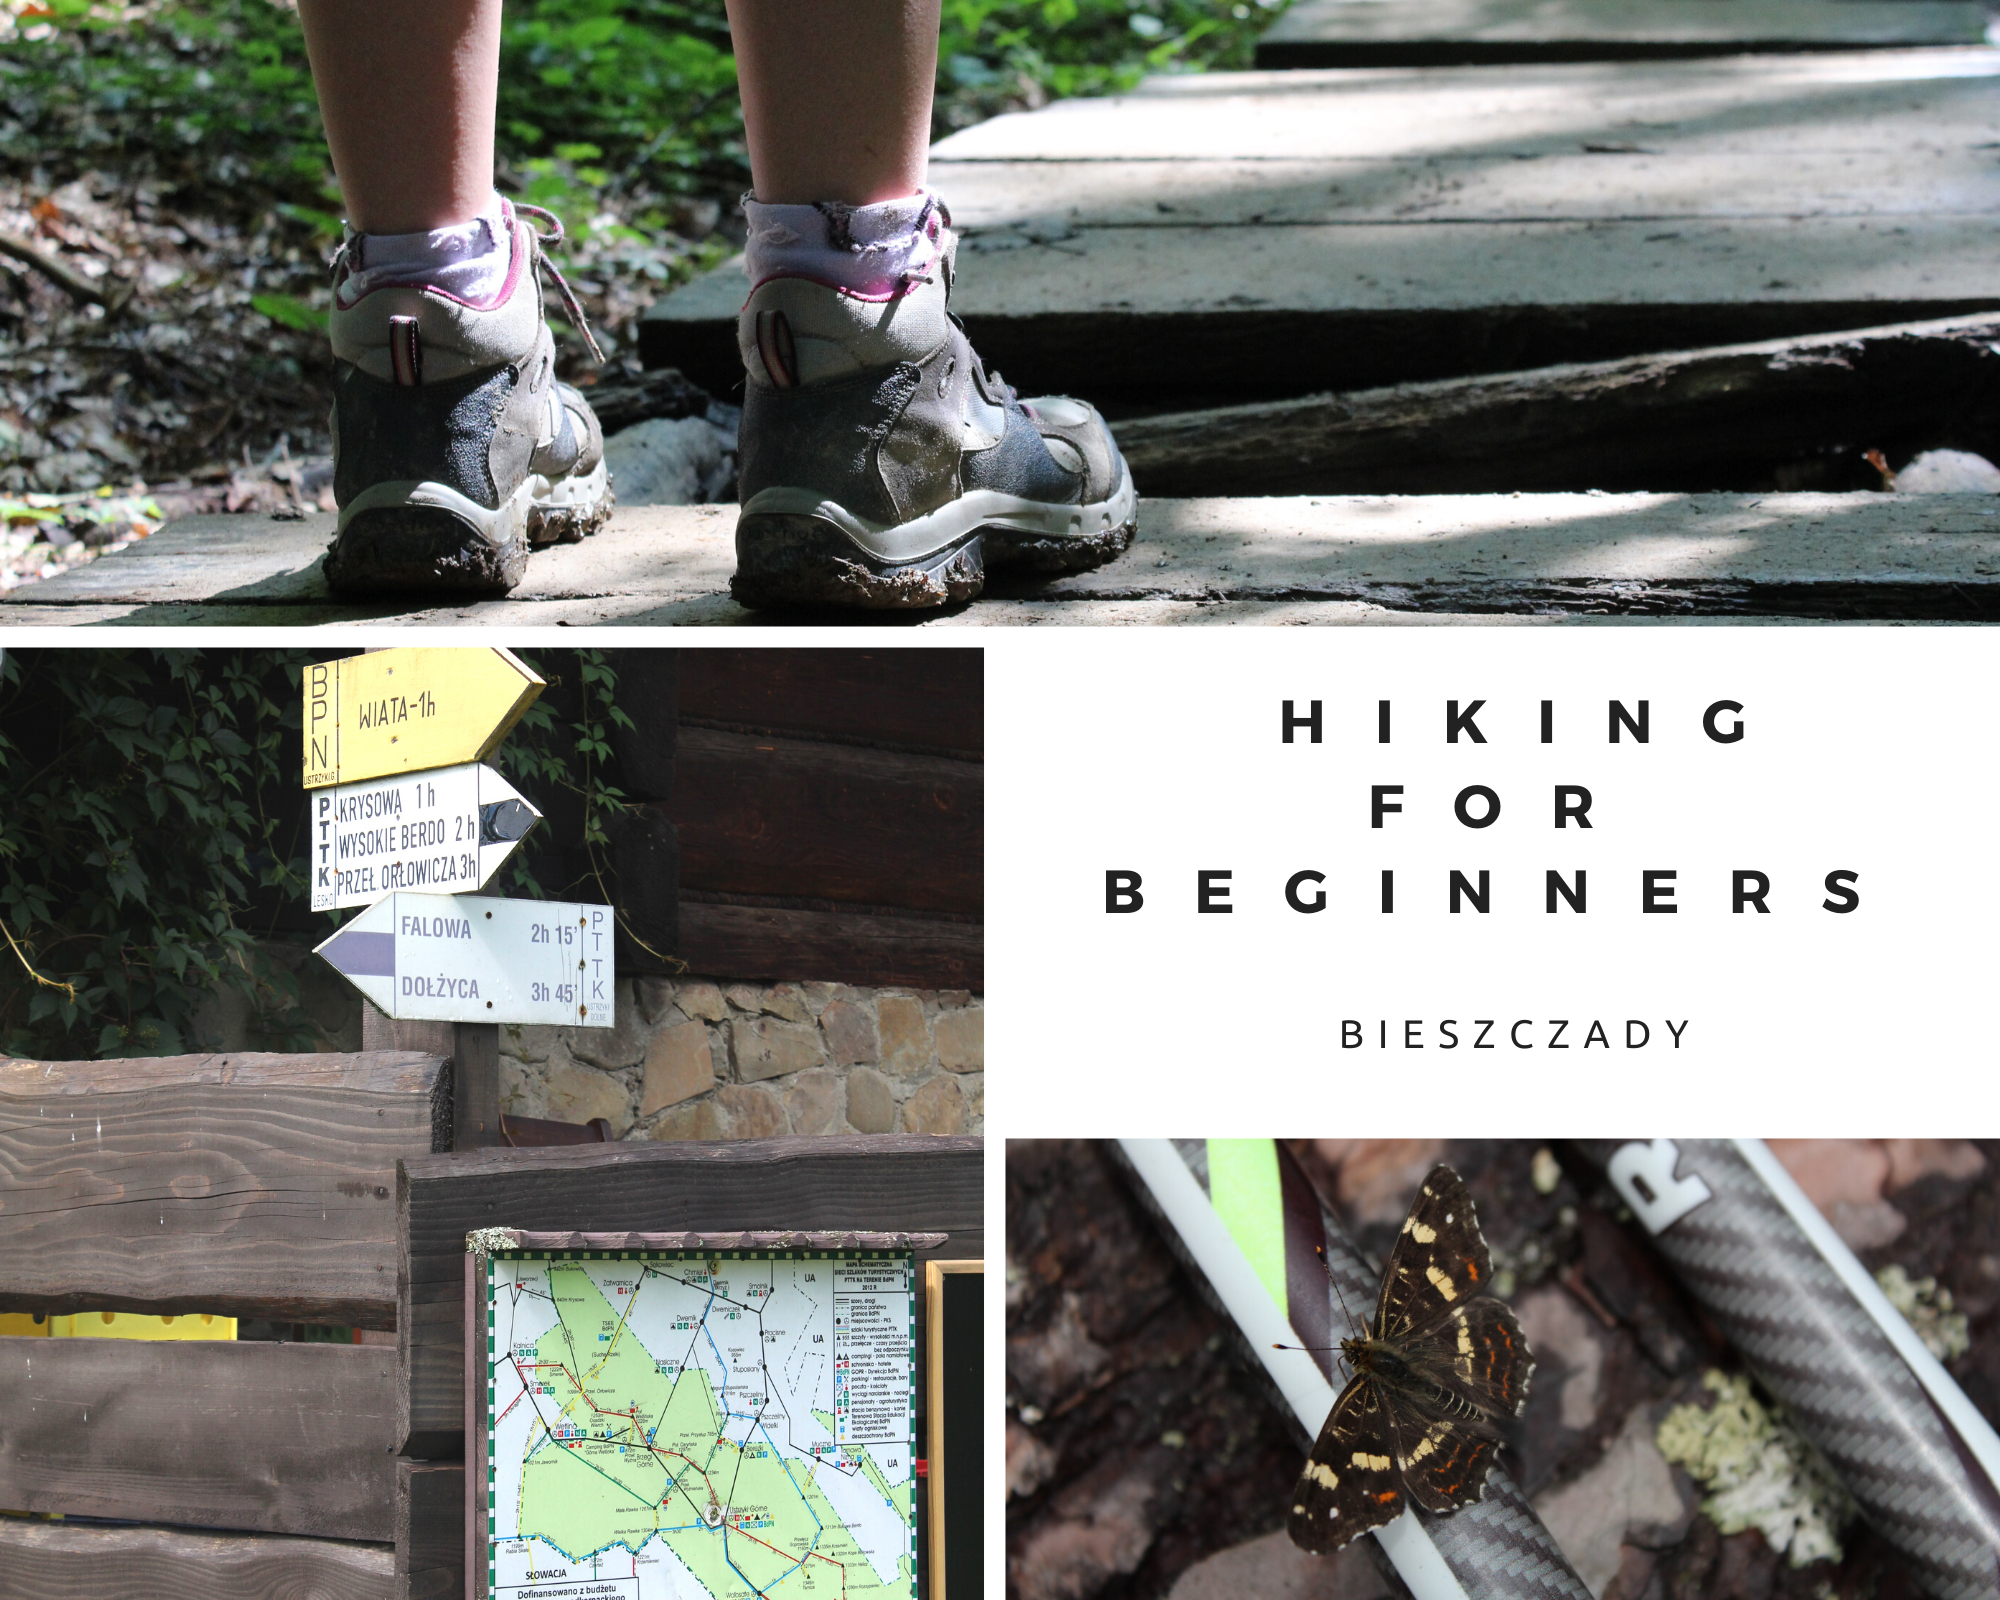 Bieszczady- hiking trails